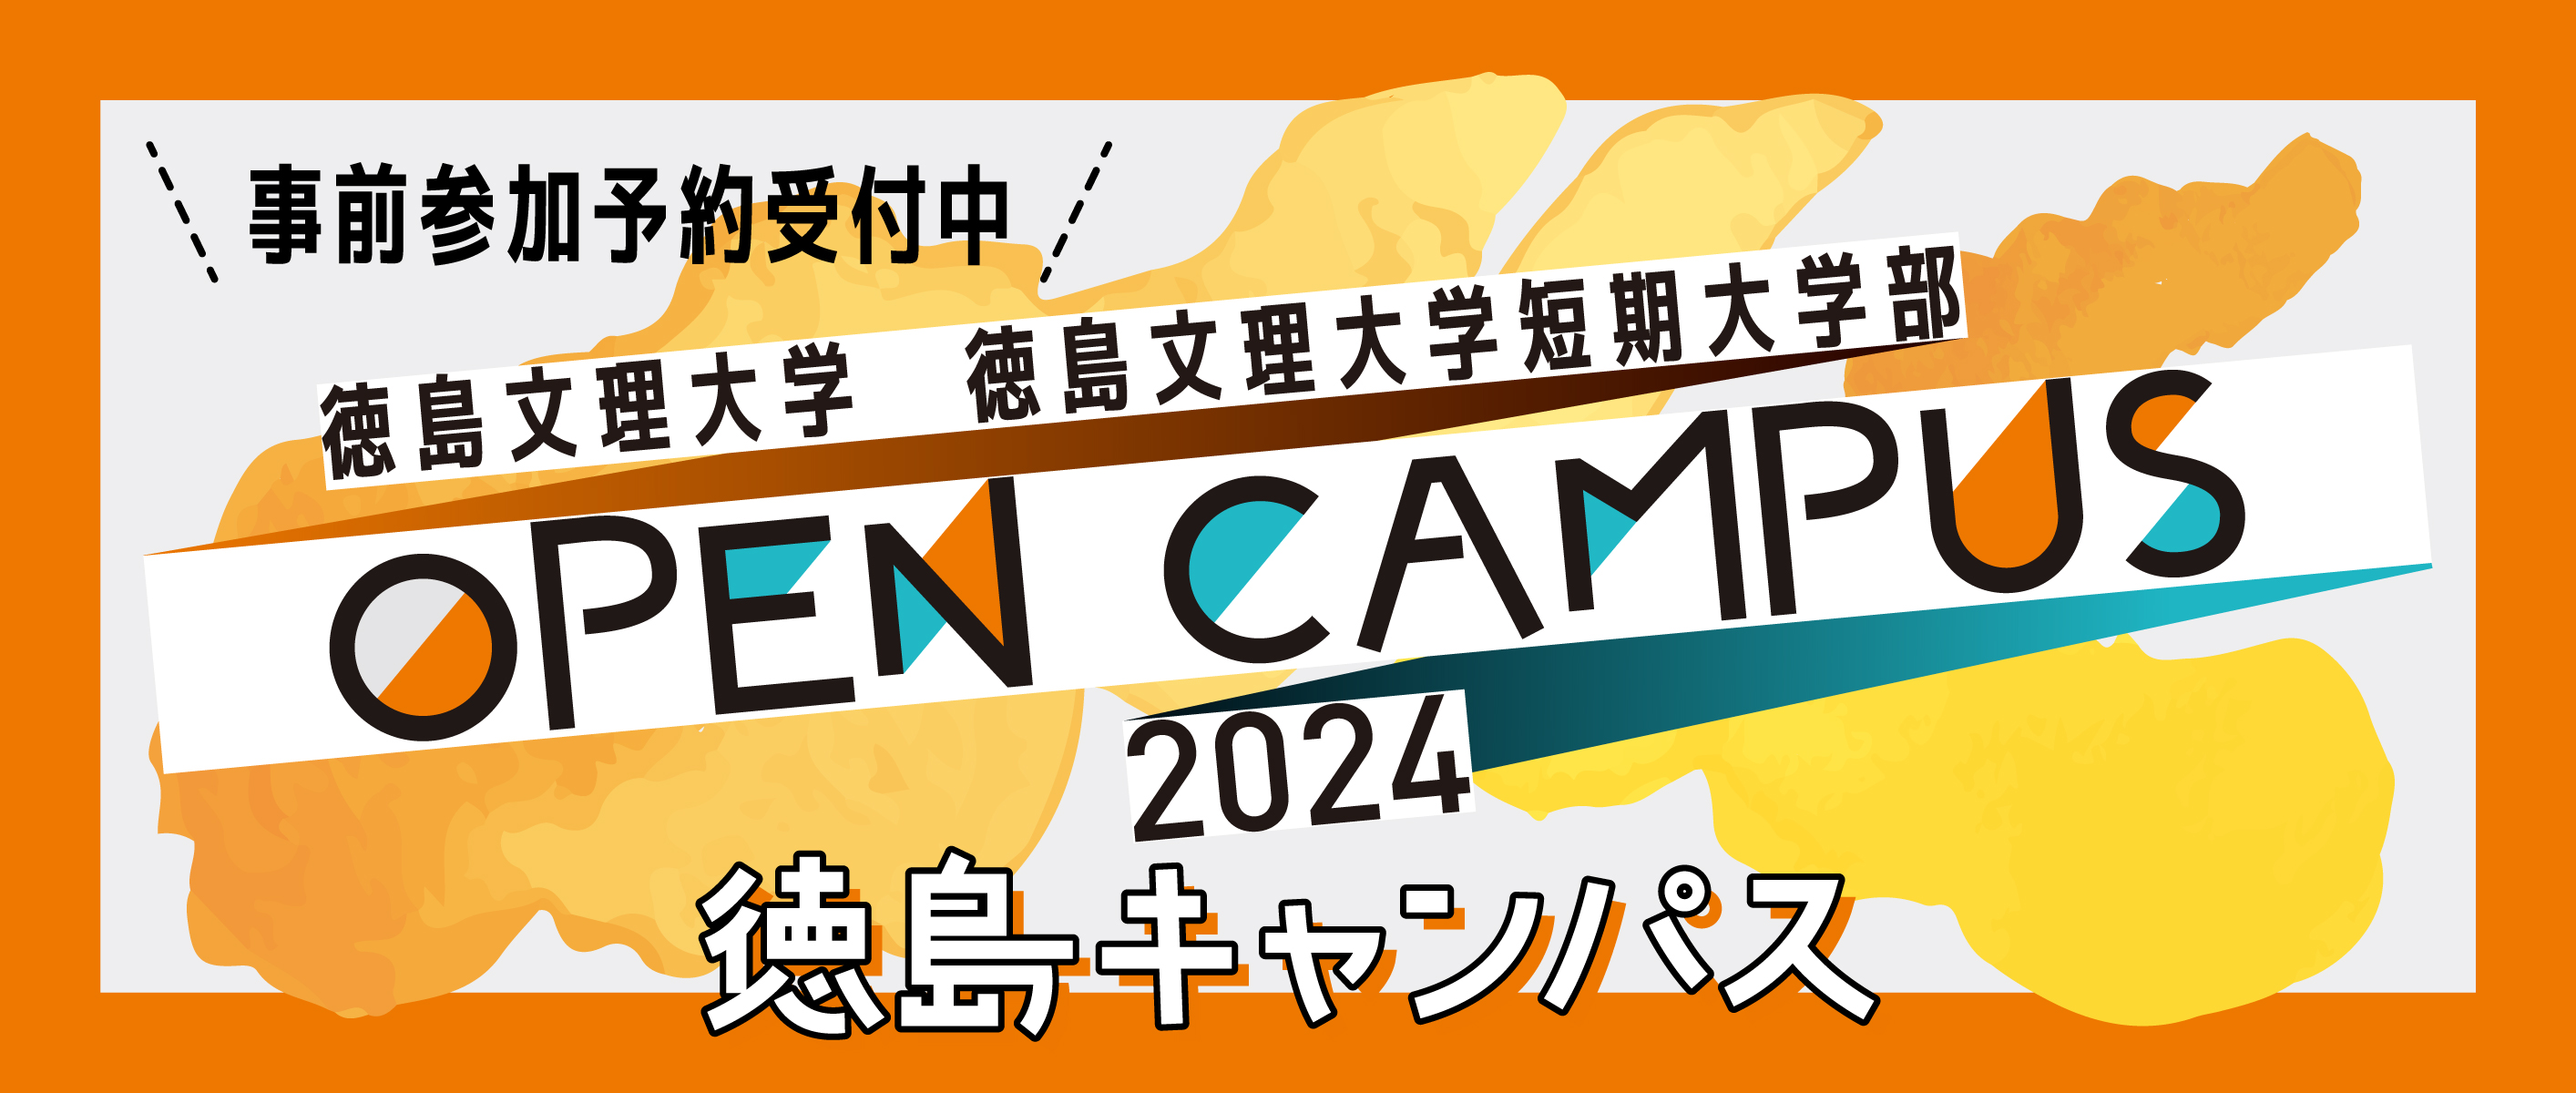 2024徳島オープンキャンパス